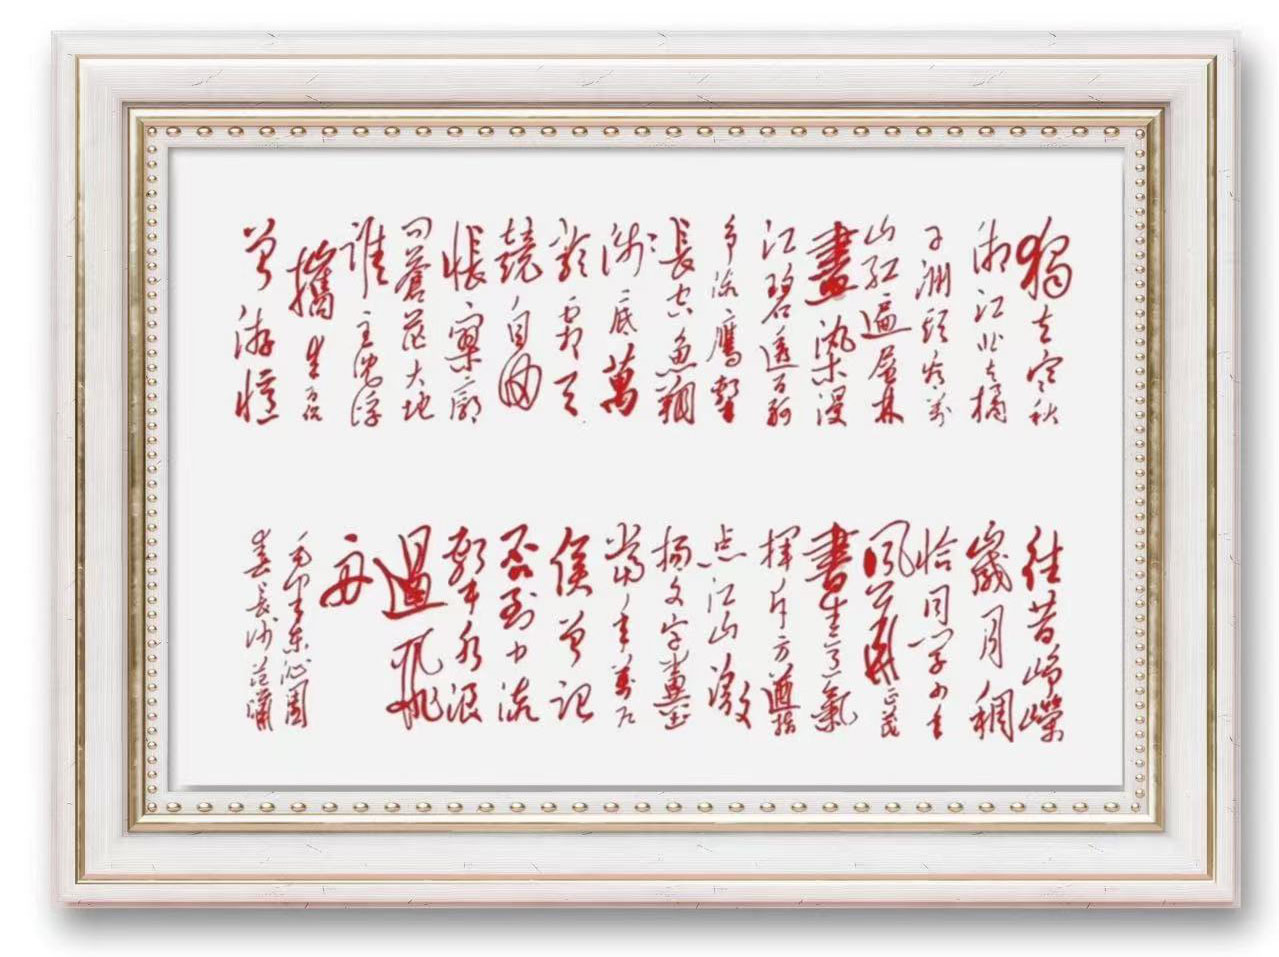 中国大众文化学会名人书画艺术发展委员会——范晔